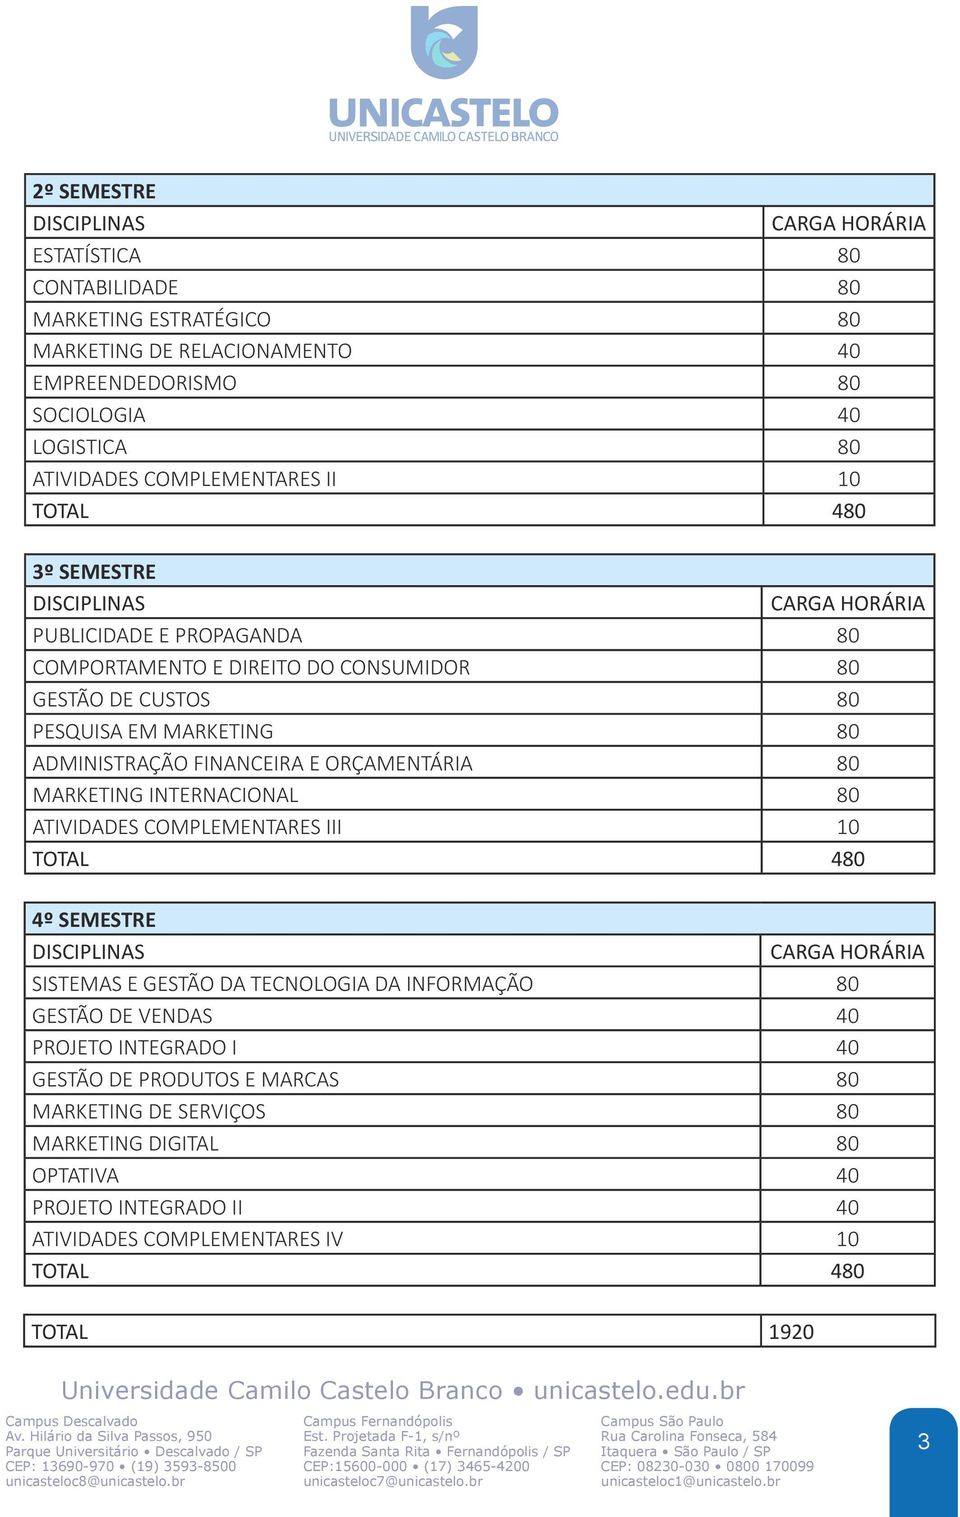 FINANCEIRA E ORÇAMENTÁRIA 80 MARKETING INTERNACIONAL 80 ATIVIDADES COMPLEMENTARES III 10 4º SEMESTRE SISTEMAS E GESTÃO DA TECNOLOGIA DA INFORMAÇÃO 80 GESTÃO DE VENDAS